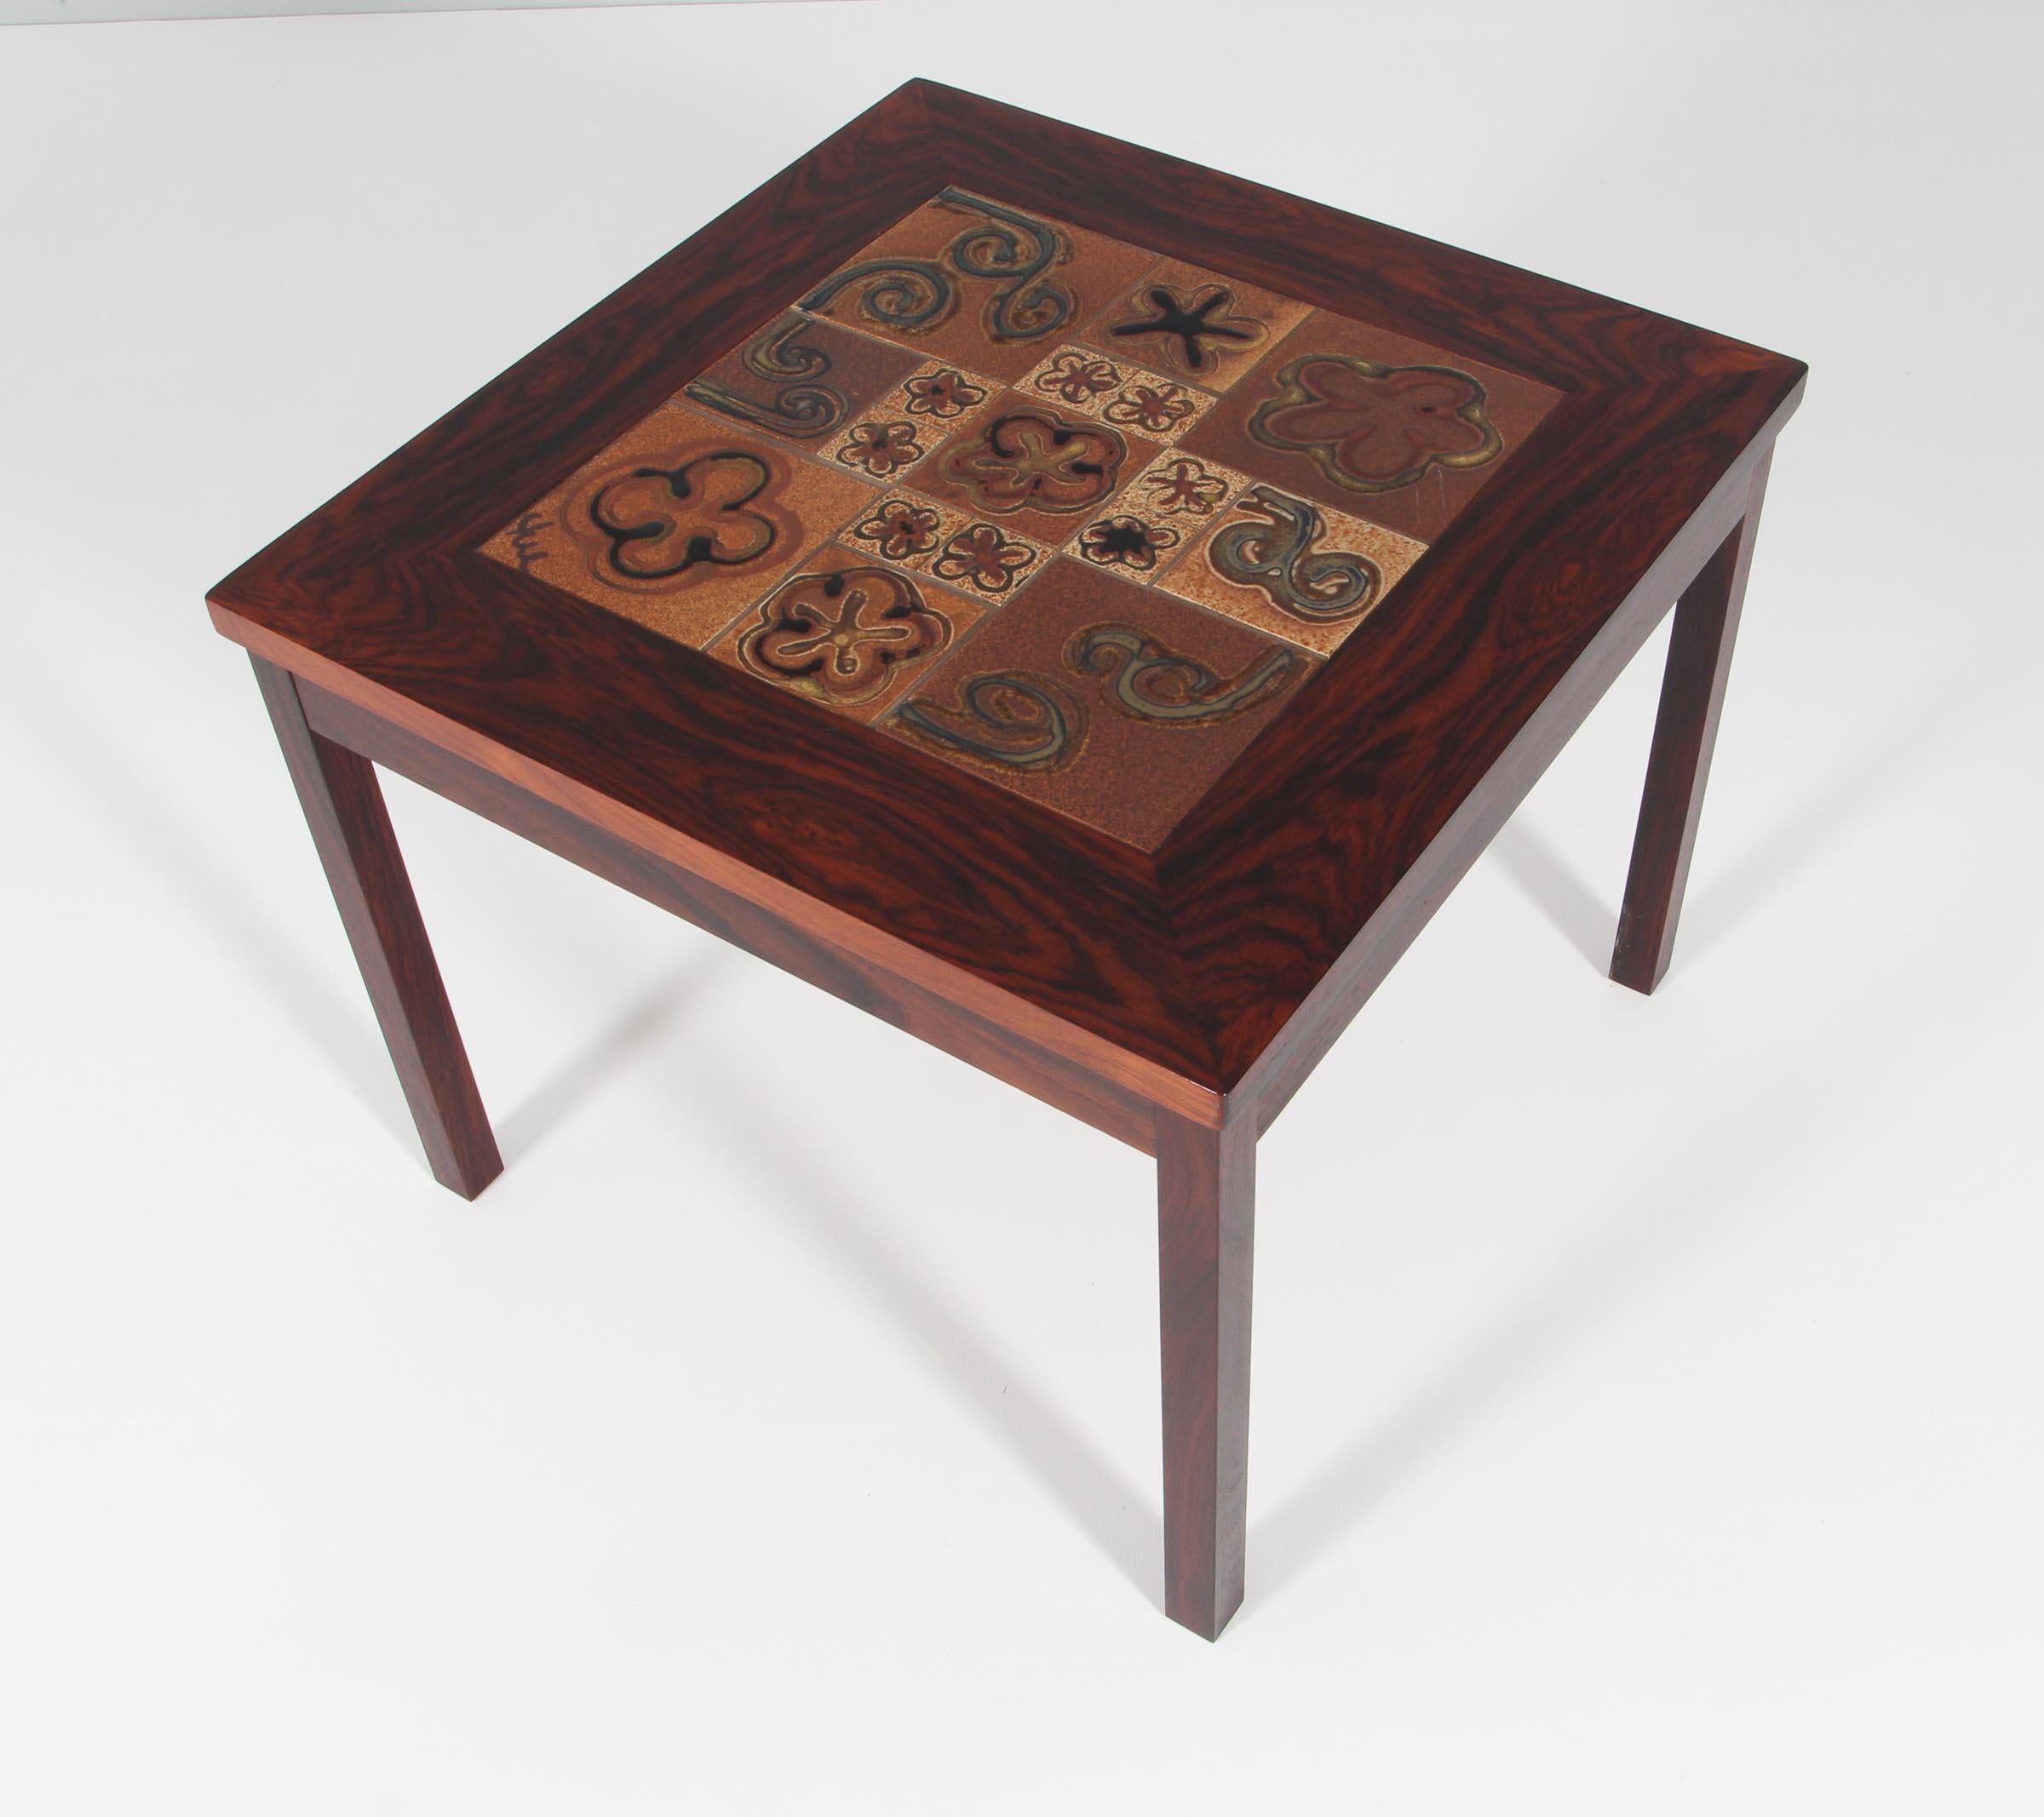 Table basse Tue Poulsen avec des carreaux de céramique réalisés par Tue Poulsen. Cadre en bois de rose.